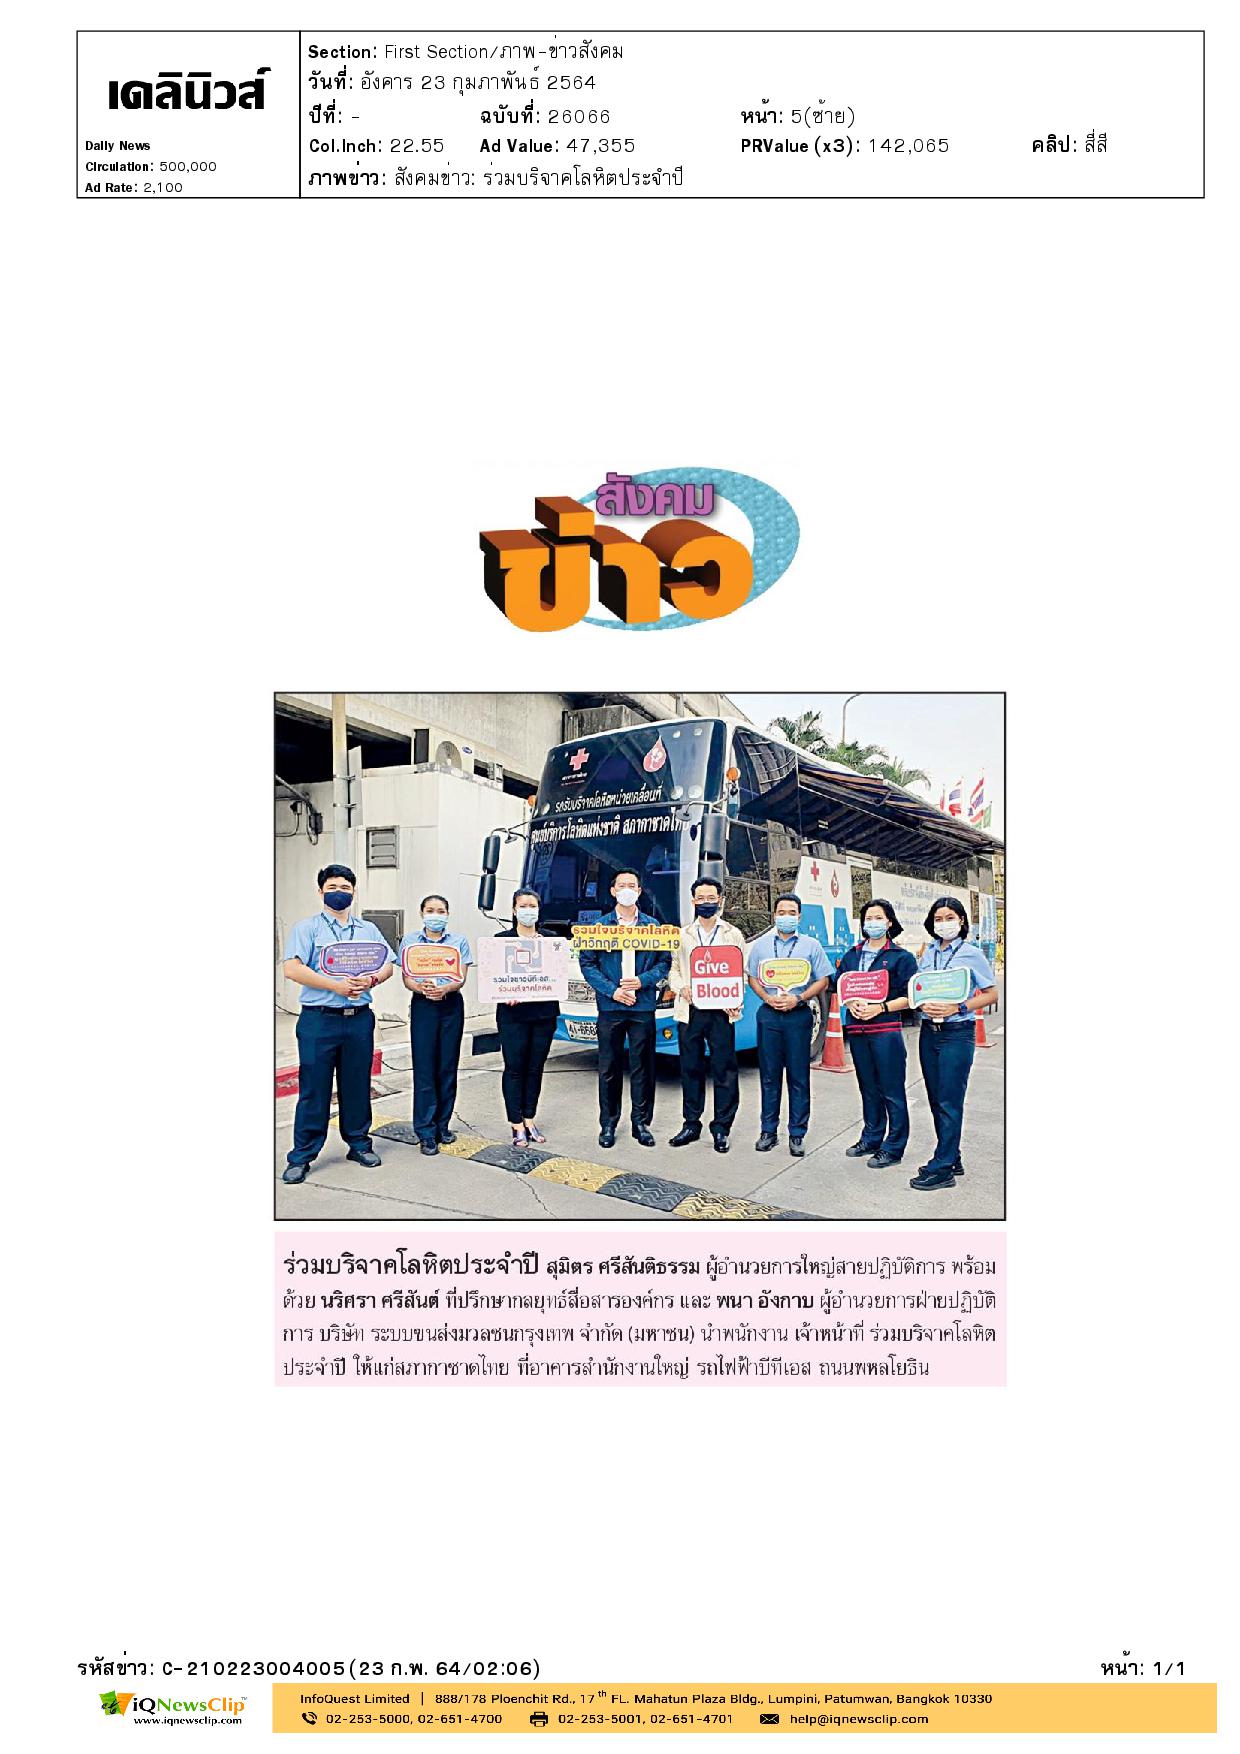 พนักงานบริษัท ระบบขนส่งมวลชนกรุงเทพ ร่วมบริจาคโลหิตประจำปี มอบให้สภากาชาดไทย